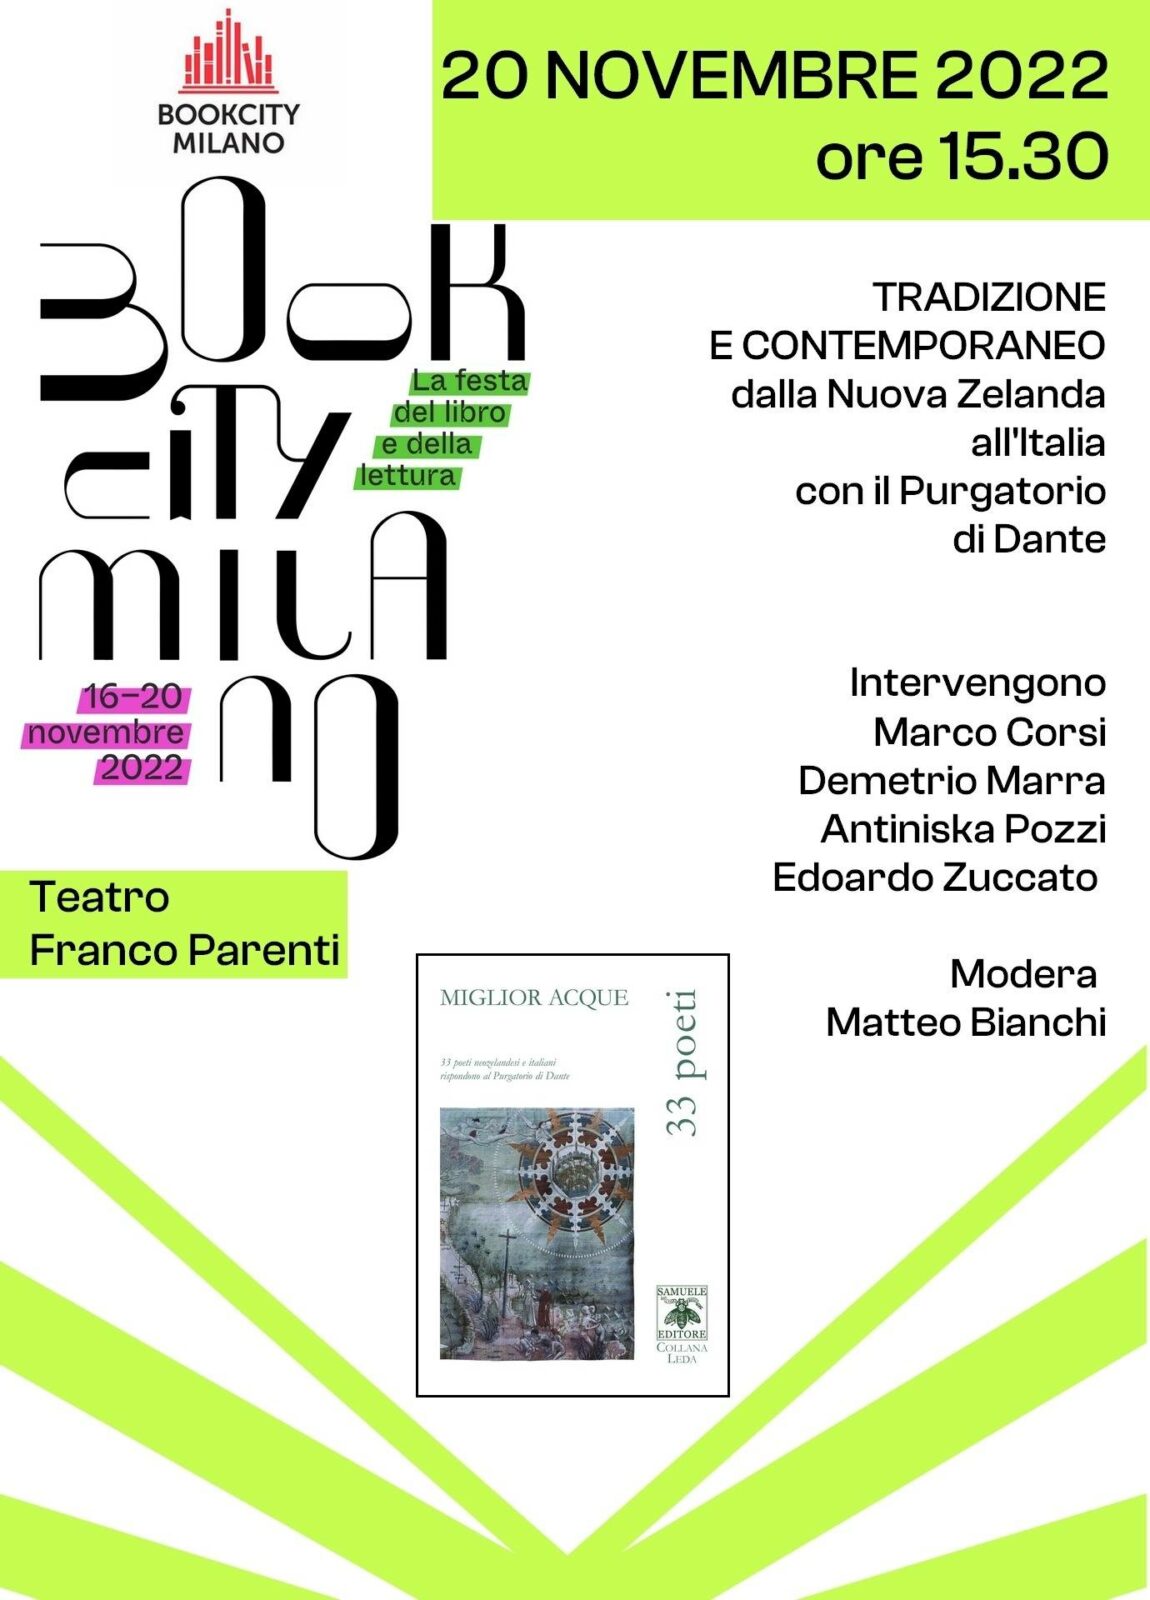 Al momento stai visualizzando Bookcity Milano 2022: Tradizione e contemporaneo: dalla Nuova Zelanda all’Italia con il Purgatorio di Dante – 20 novembre